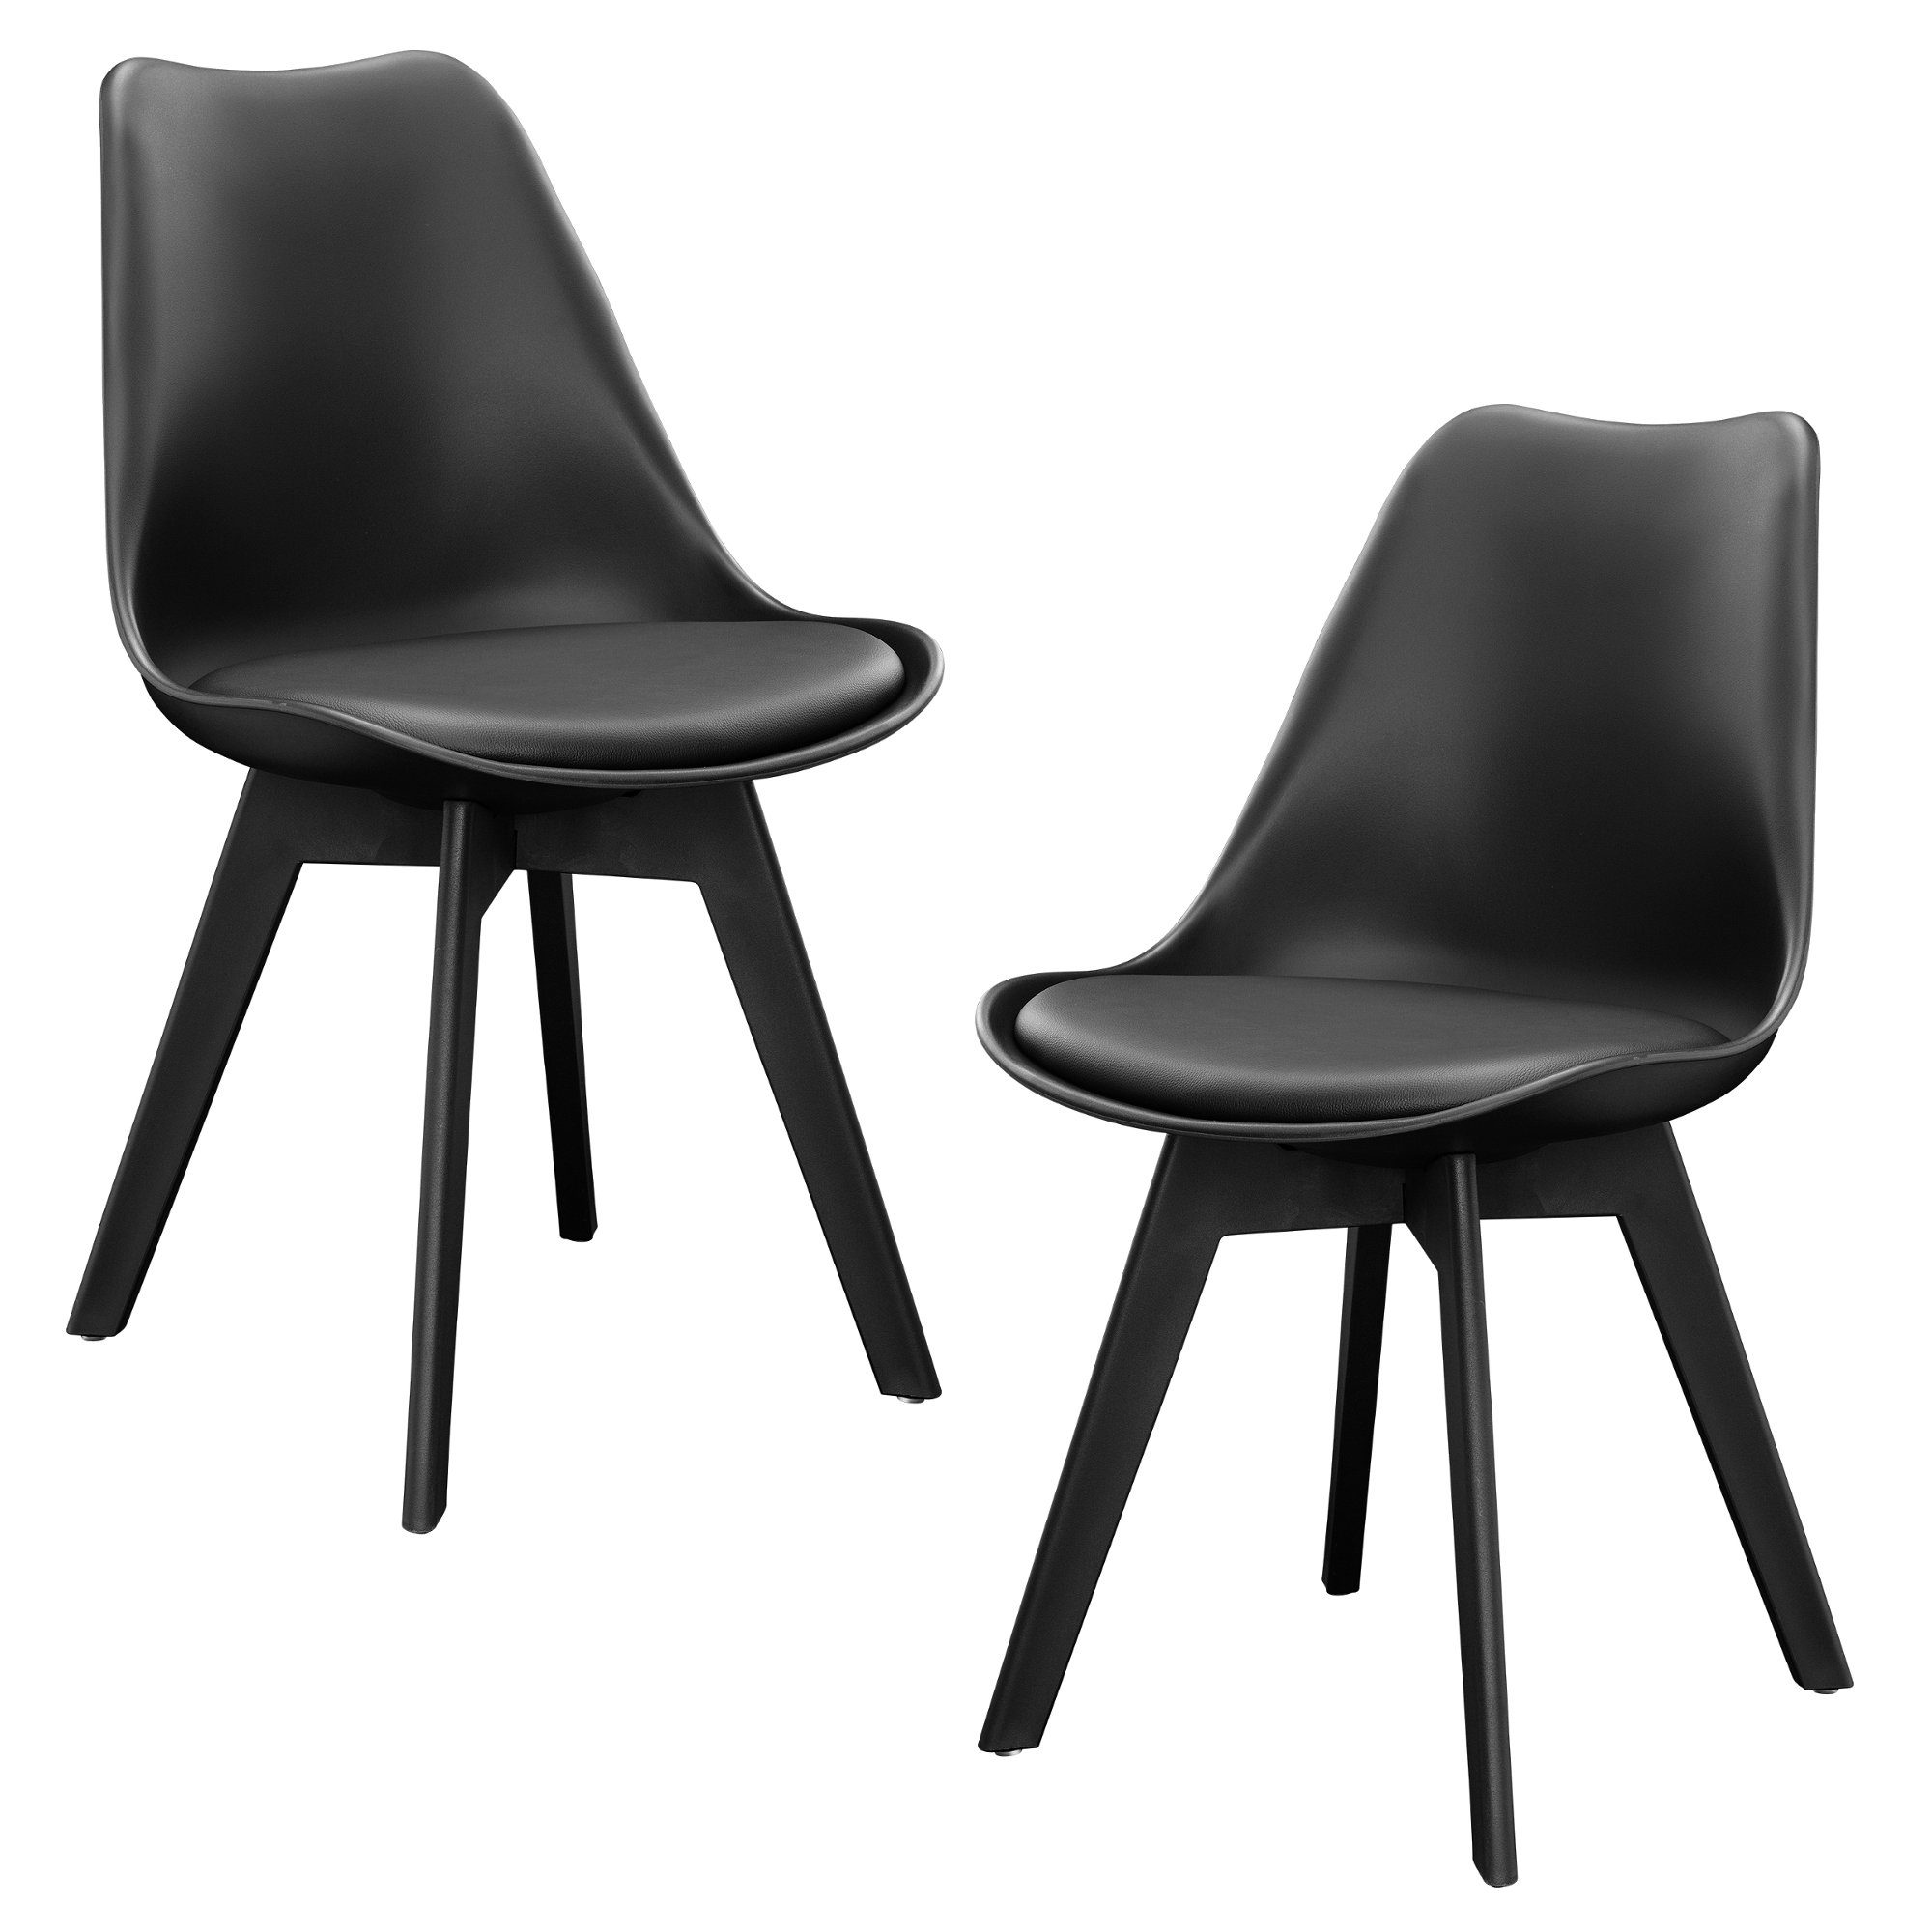 2x Design Stühle Esszimmer Stuhl Holz Kunststoff Kunst-Leder Plastik en.casa 